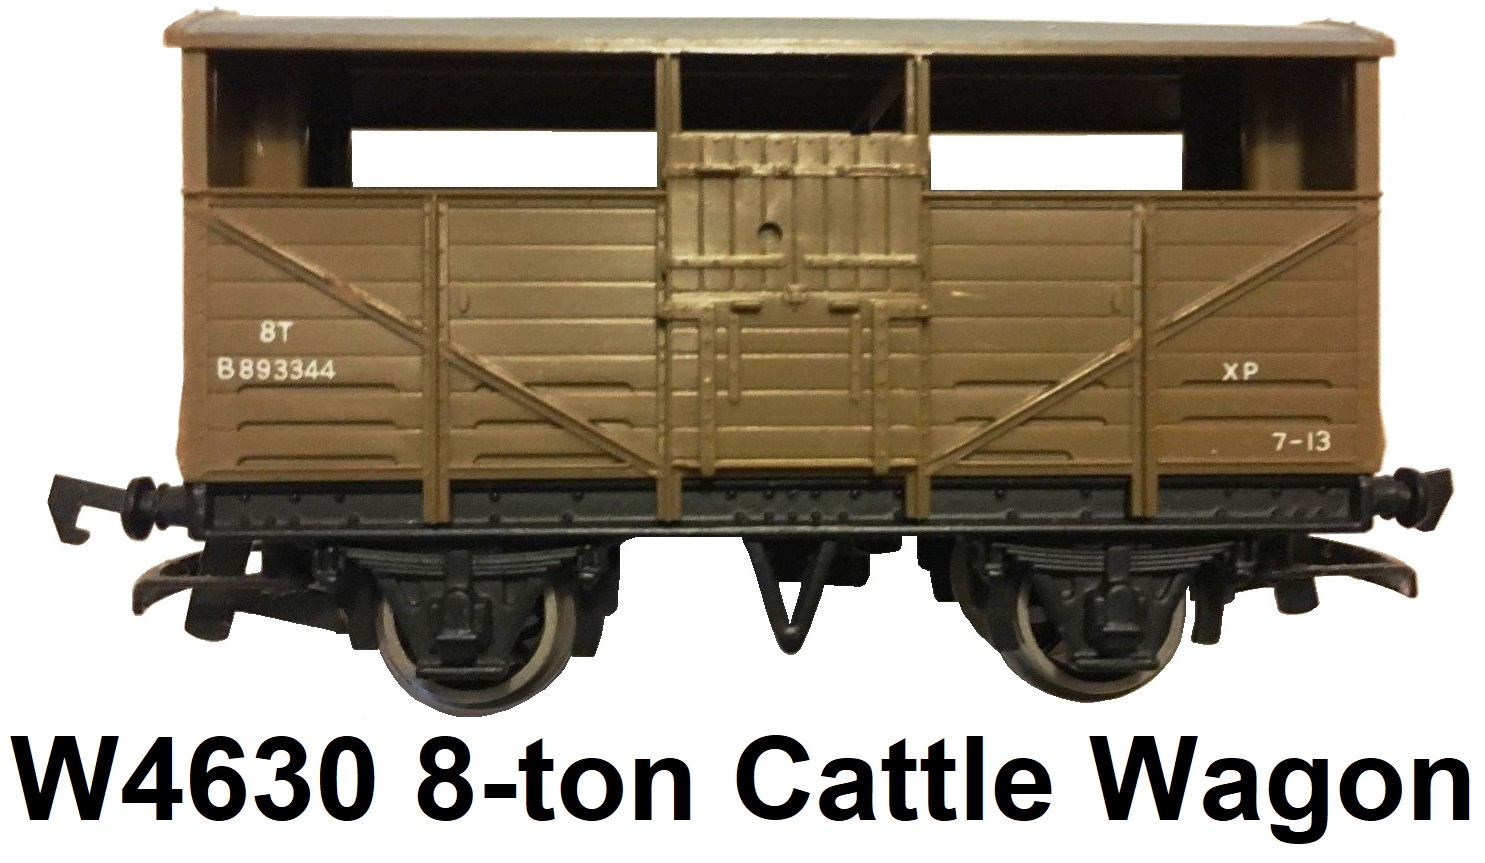 G & R Wrenn Railways OO/HO gauge W4630 8-ton Cattle Wagon #893344